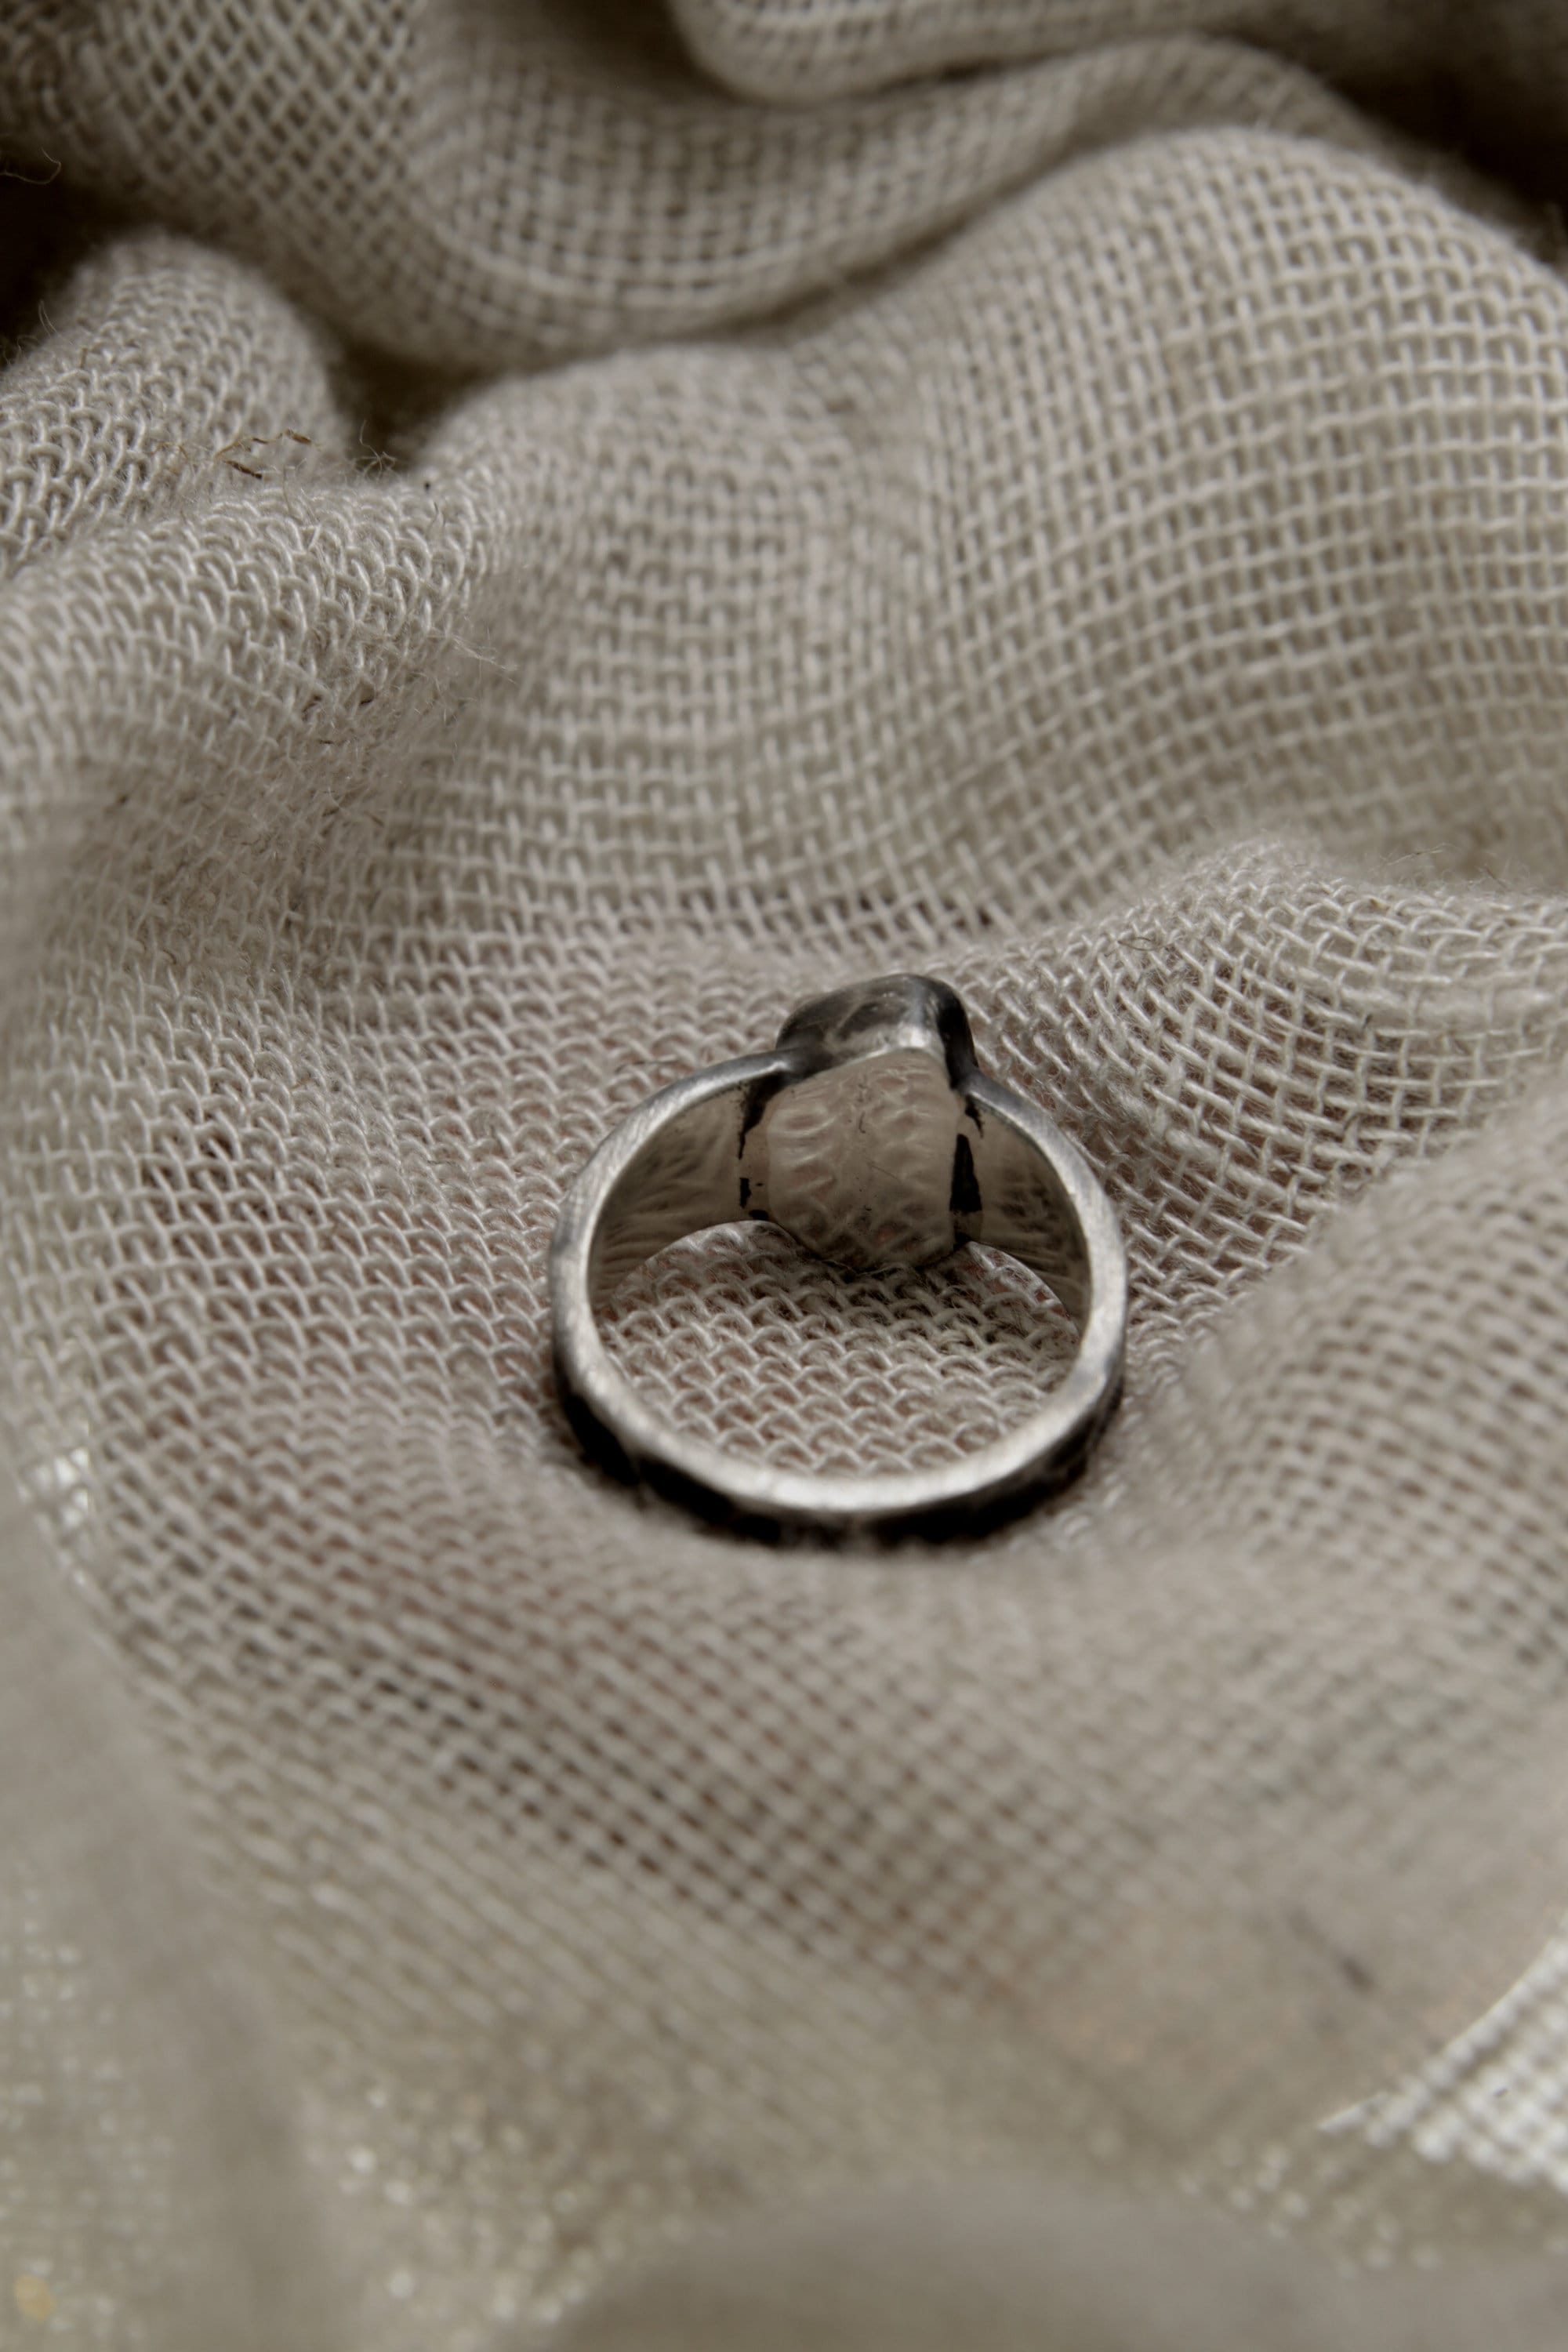 Aurora Australis Garnet: Sterling Silver Ring with Australian Gem Garnet - Textured & Oxidised - Size 5 1/2